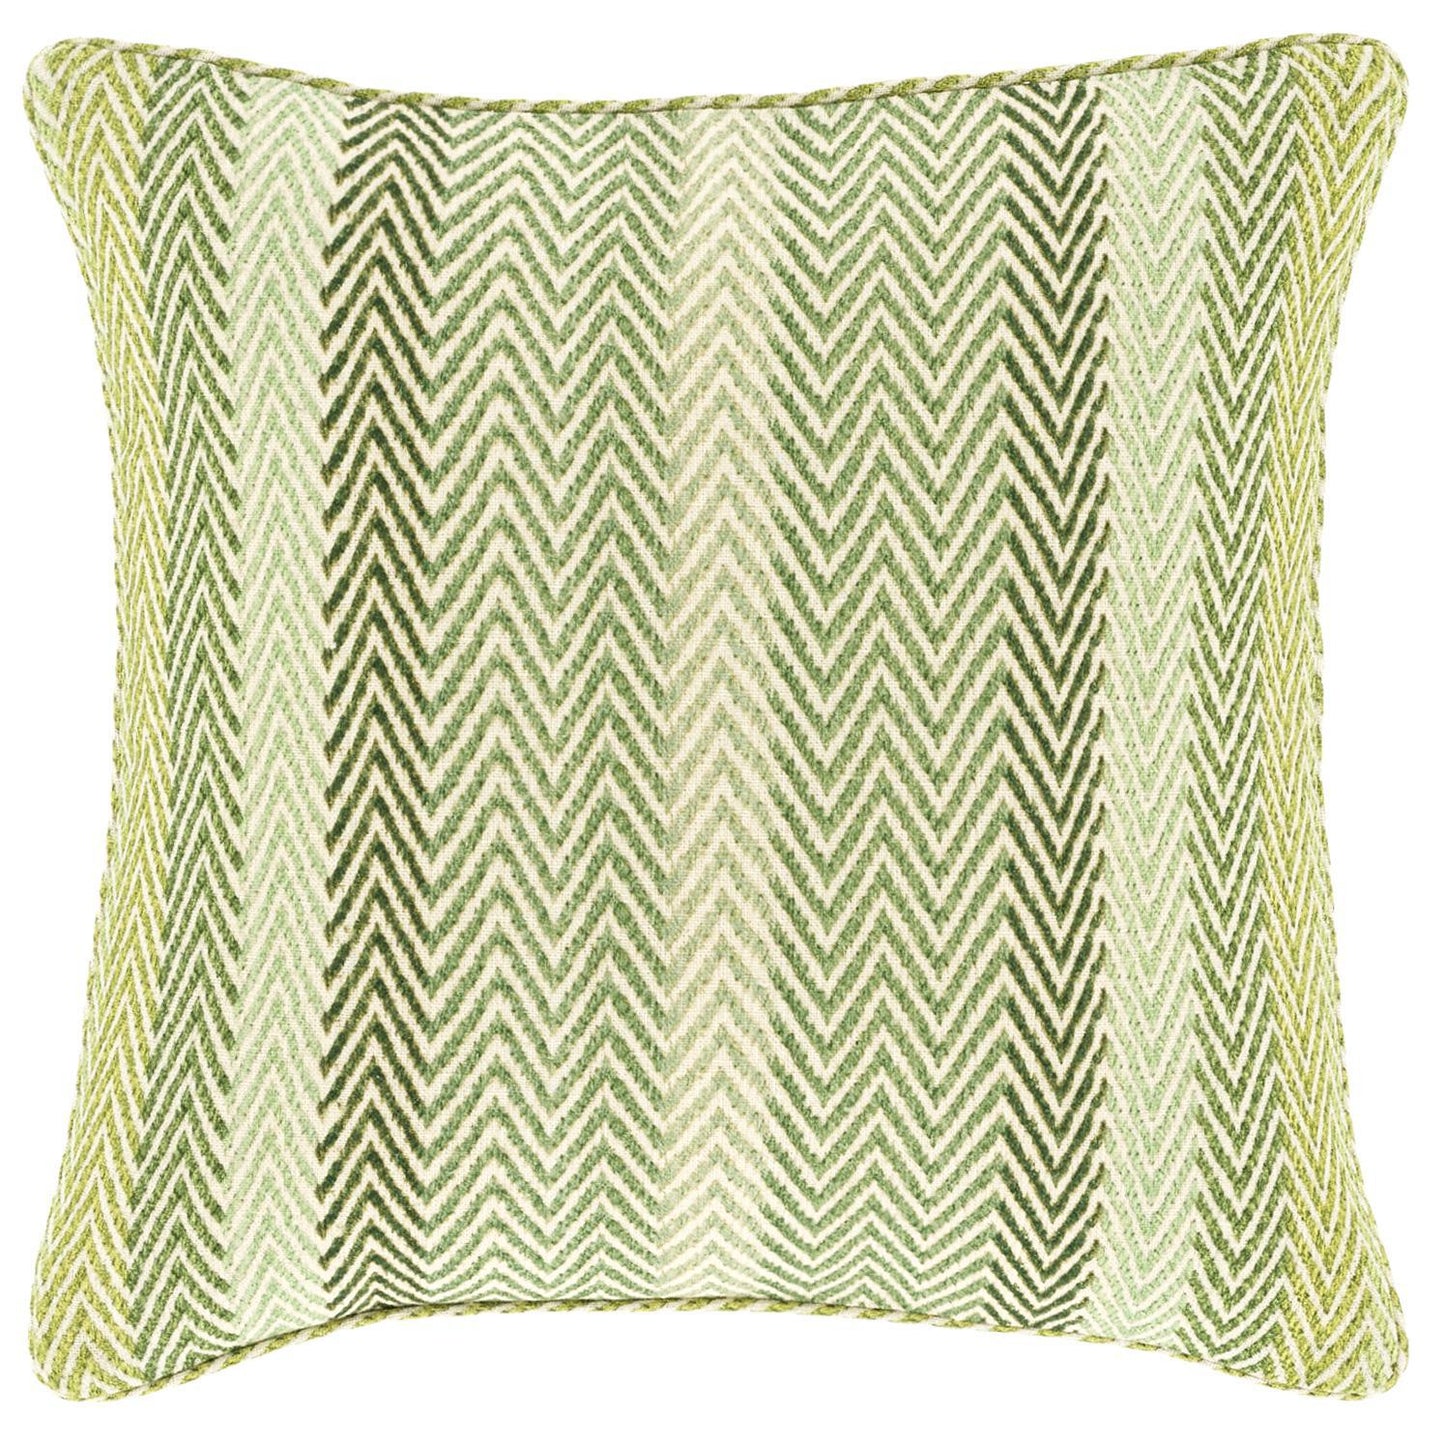 Pillow - "Nip Tuck" Green/Ivory - Linen - 20"